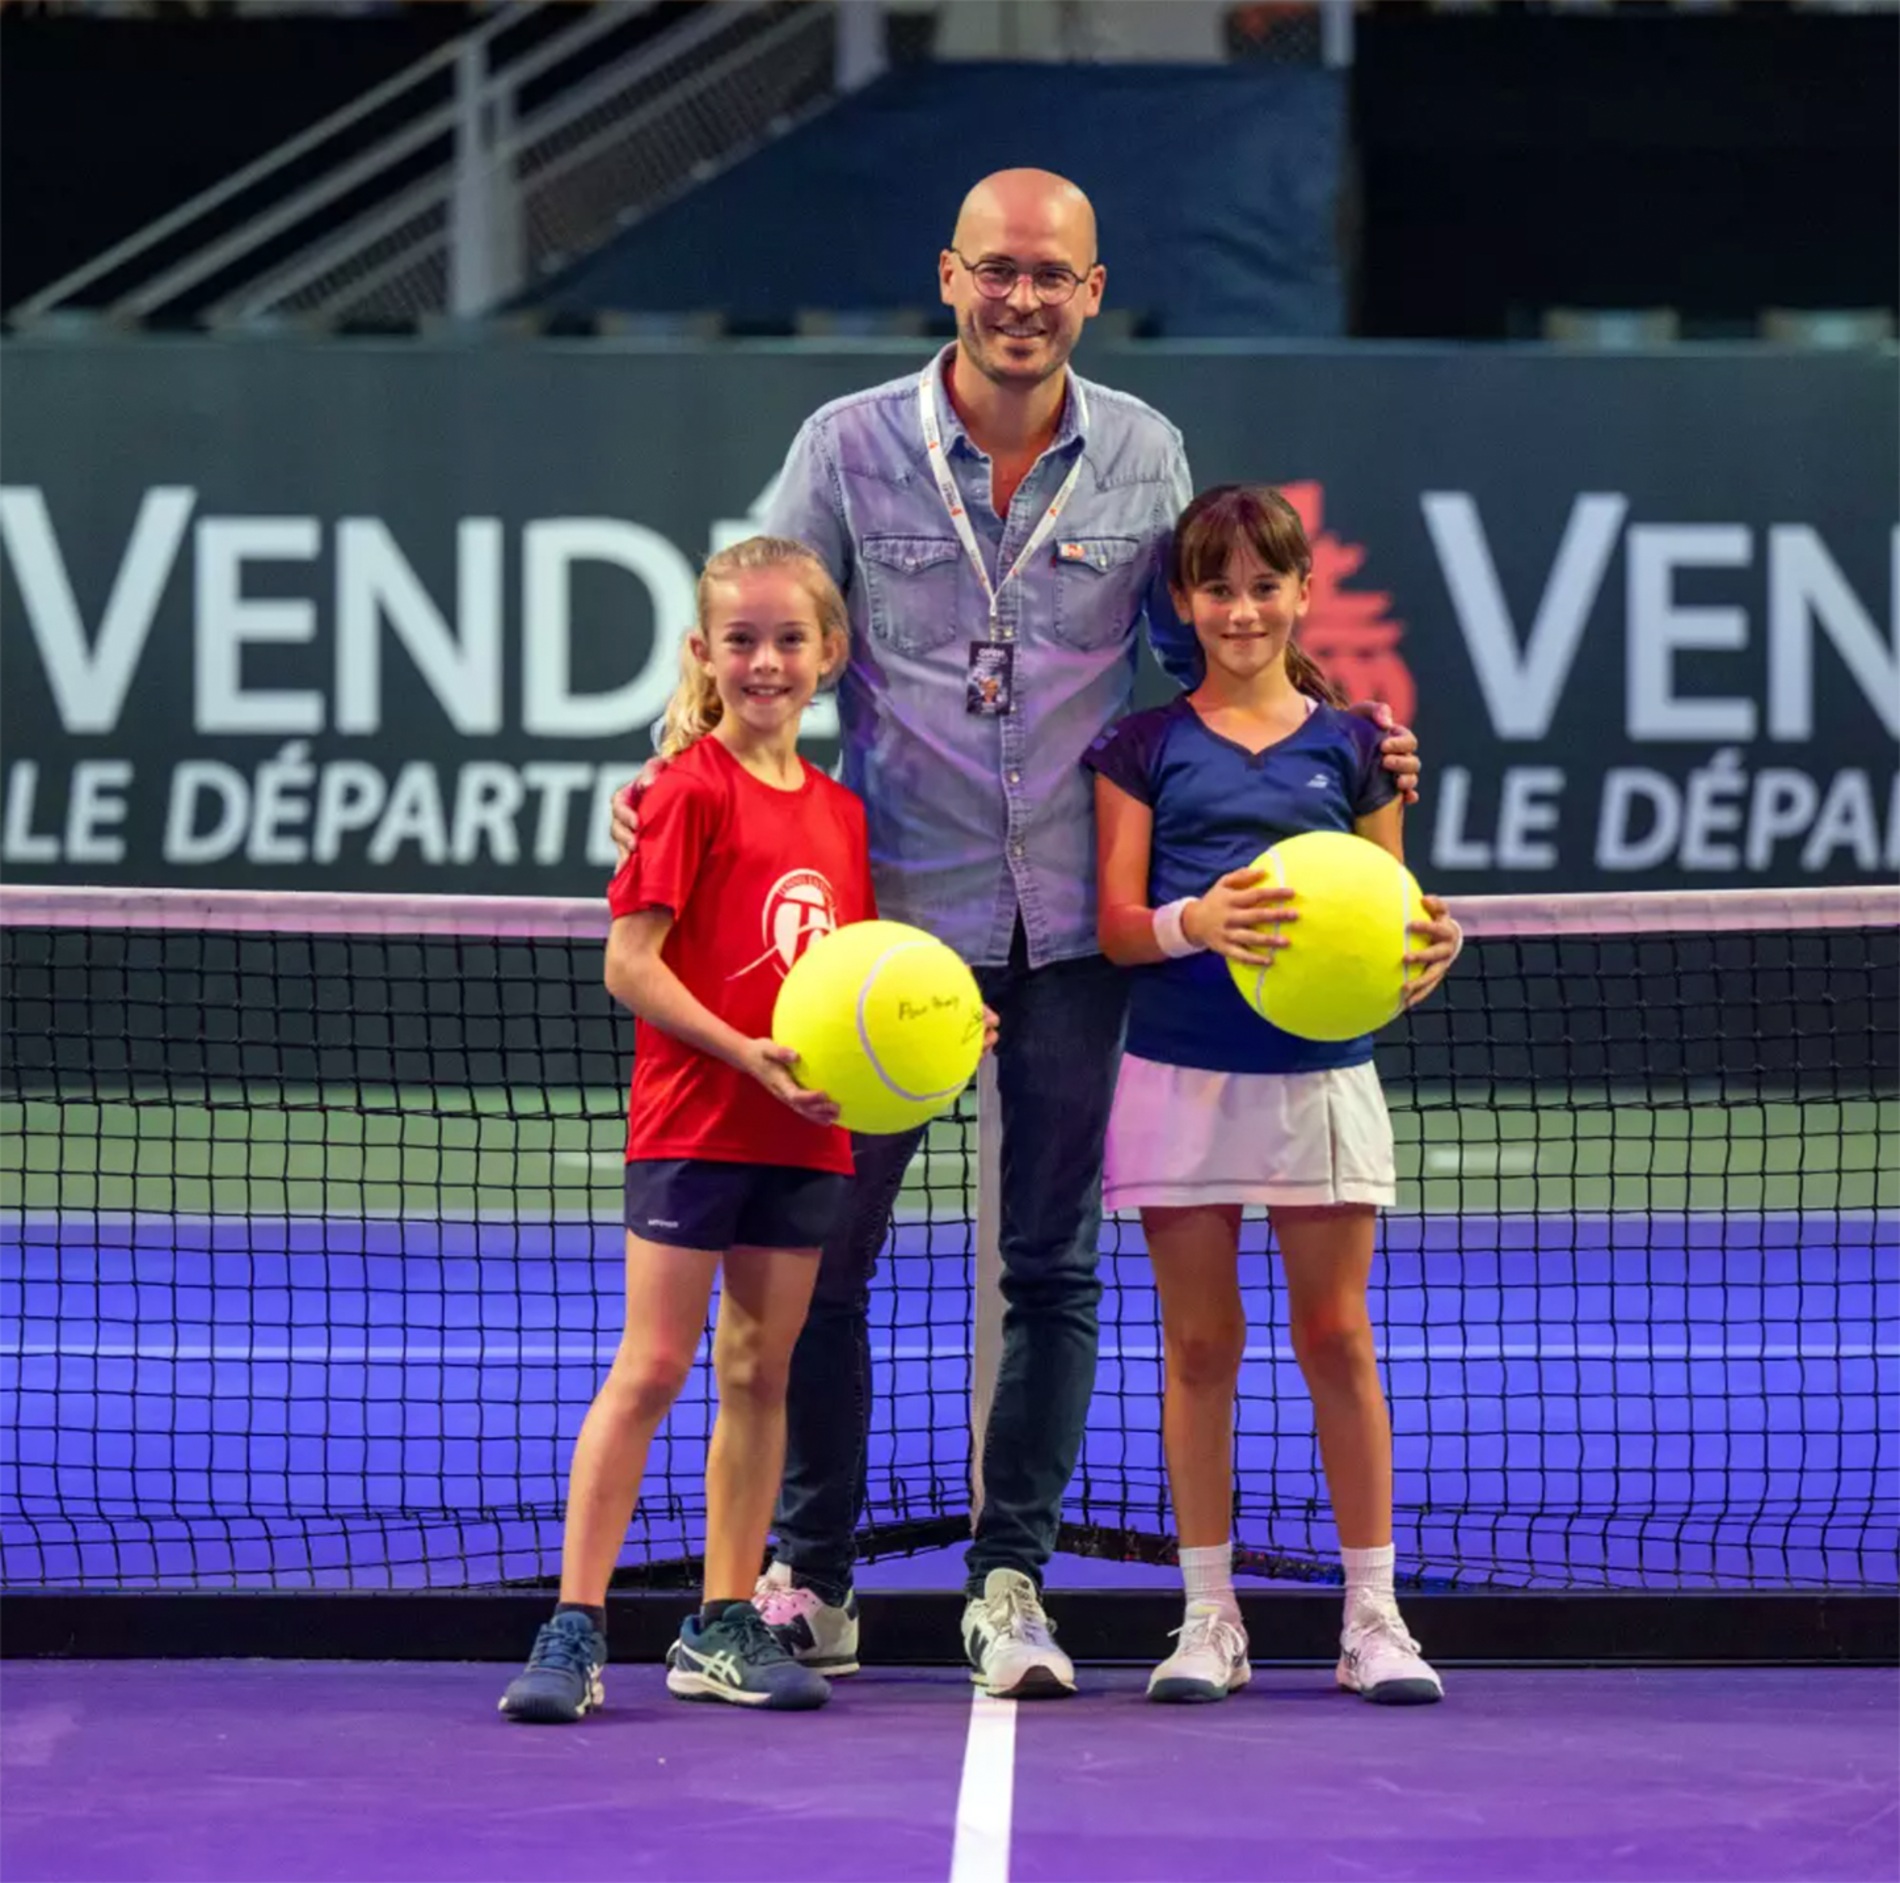 Deux jeunes joueuses de tennis et un adulte posant pour une photographie sur un terrain de tennis